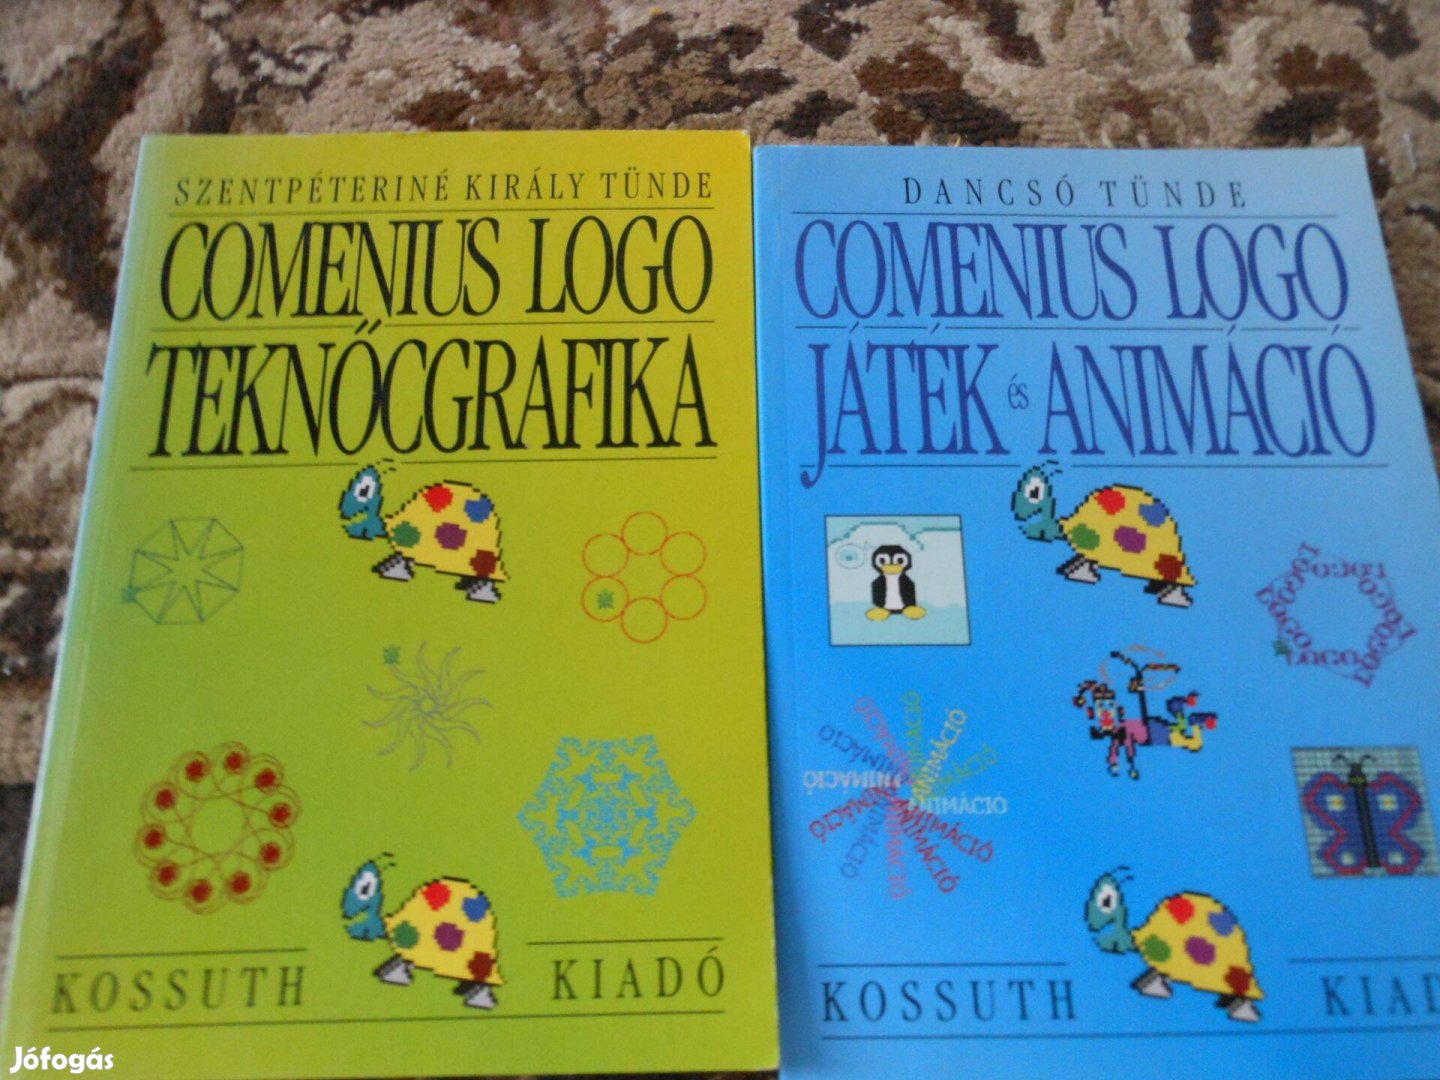 Comenius logo teknőcgrafika és Játék és animáció 2 kötet